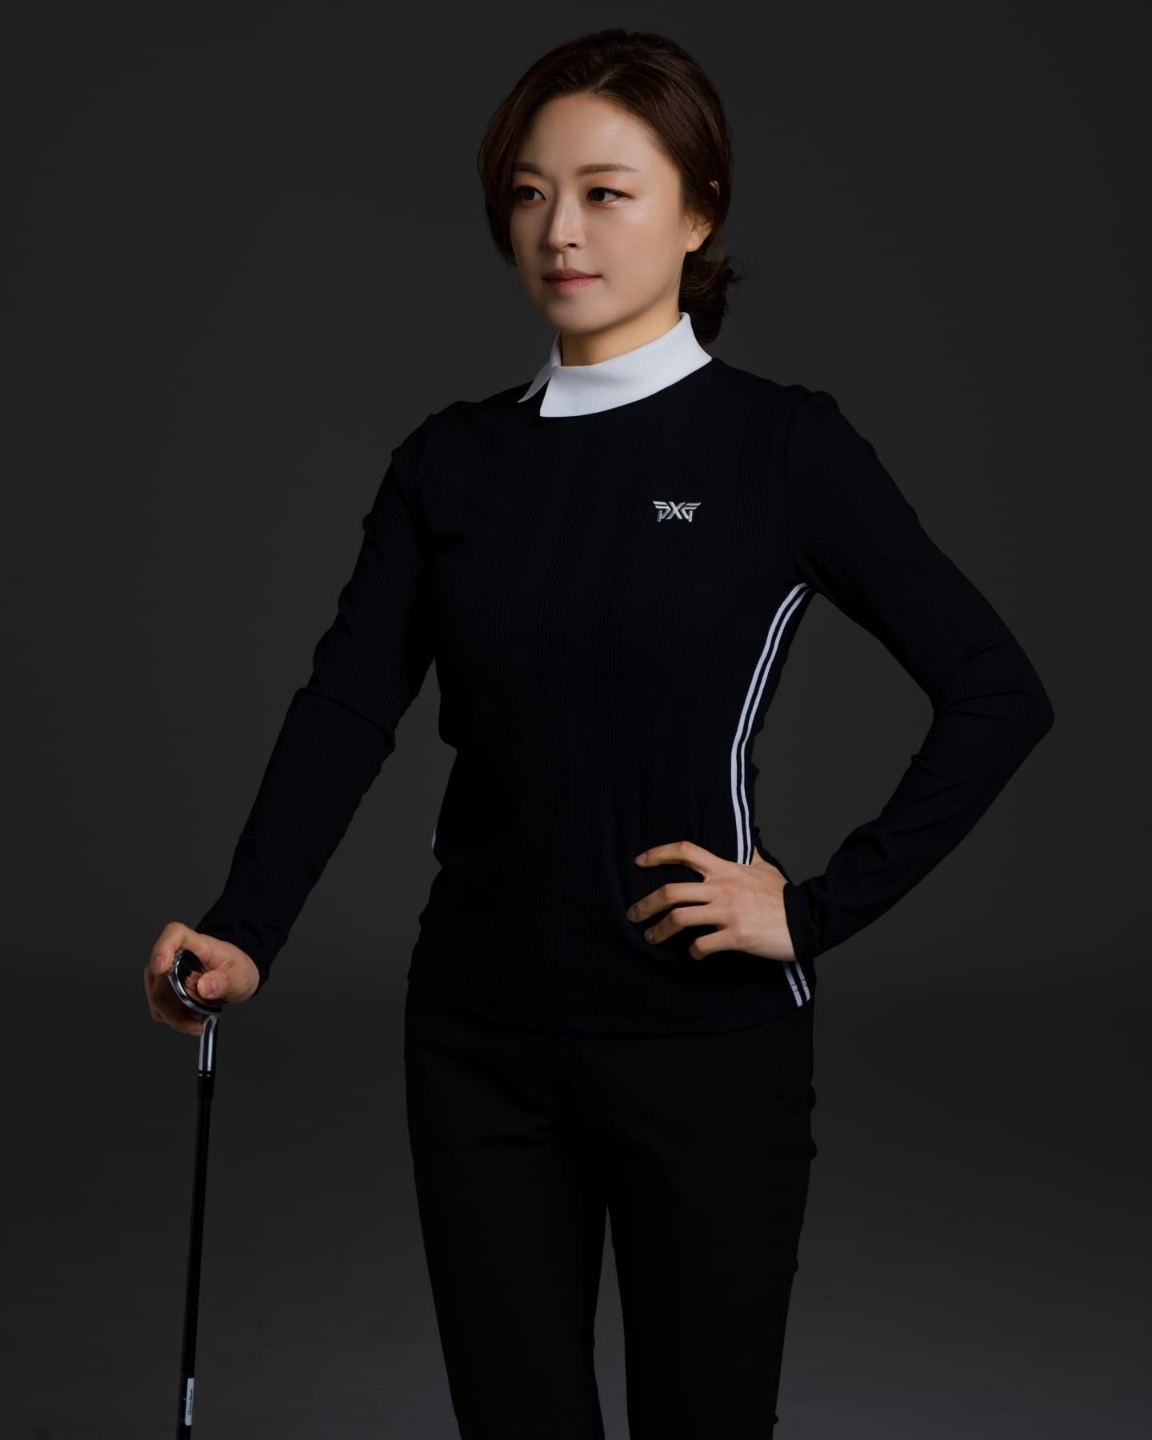 군위의 딸 박현진프로. 대한골프협회 여자 국가대표팀 사령탑에 올라